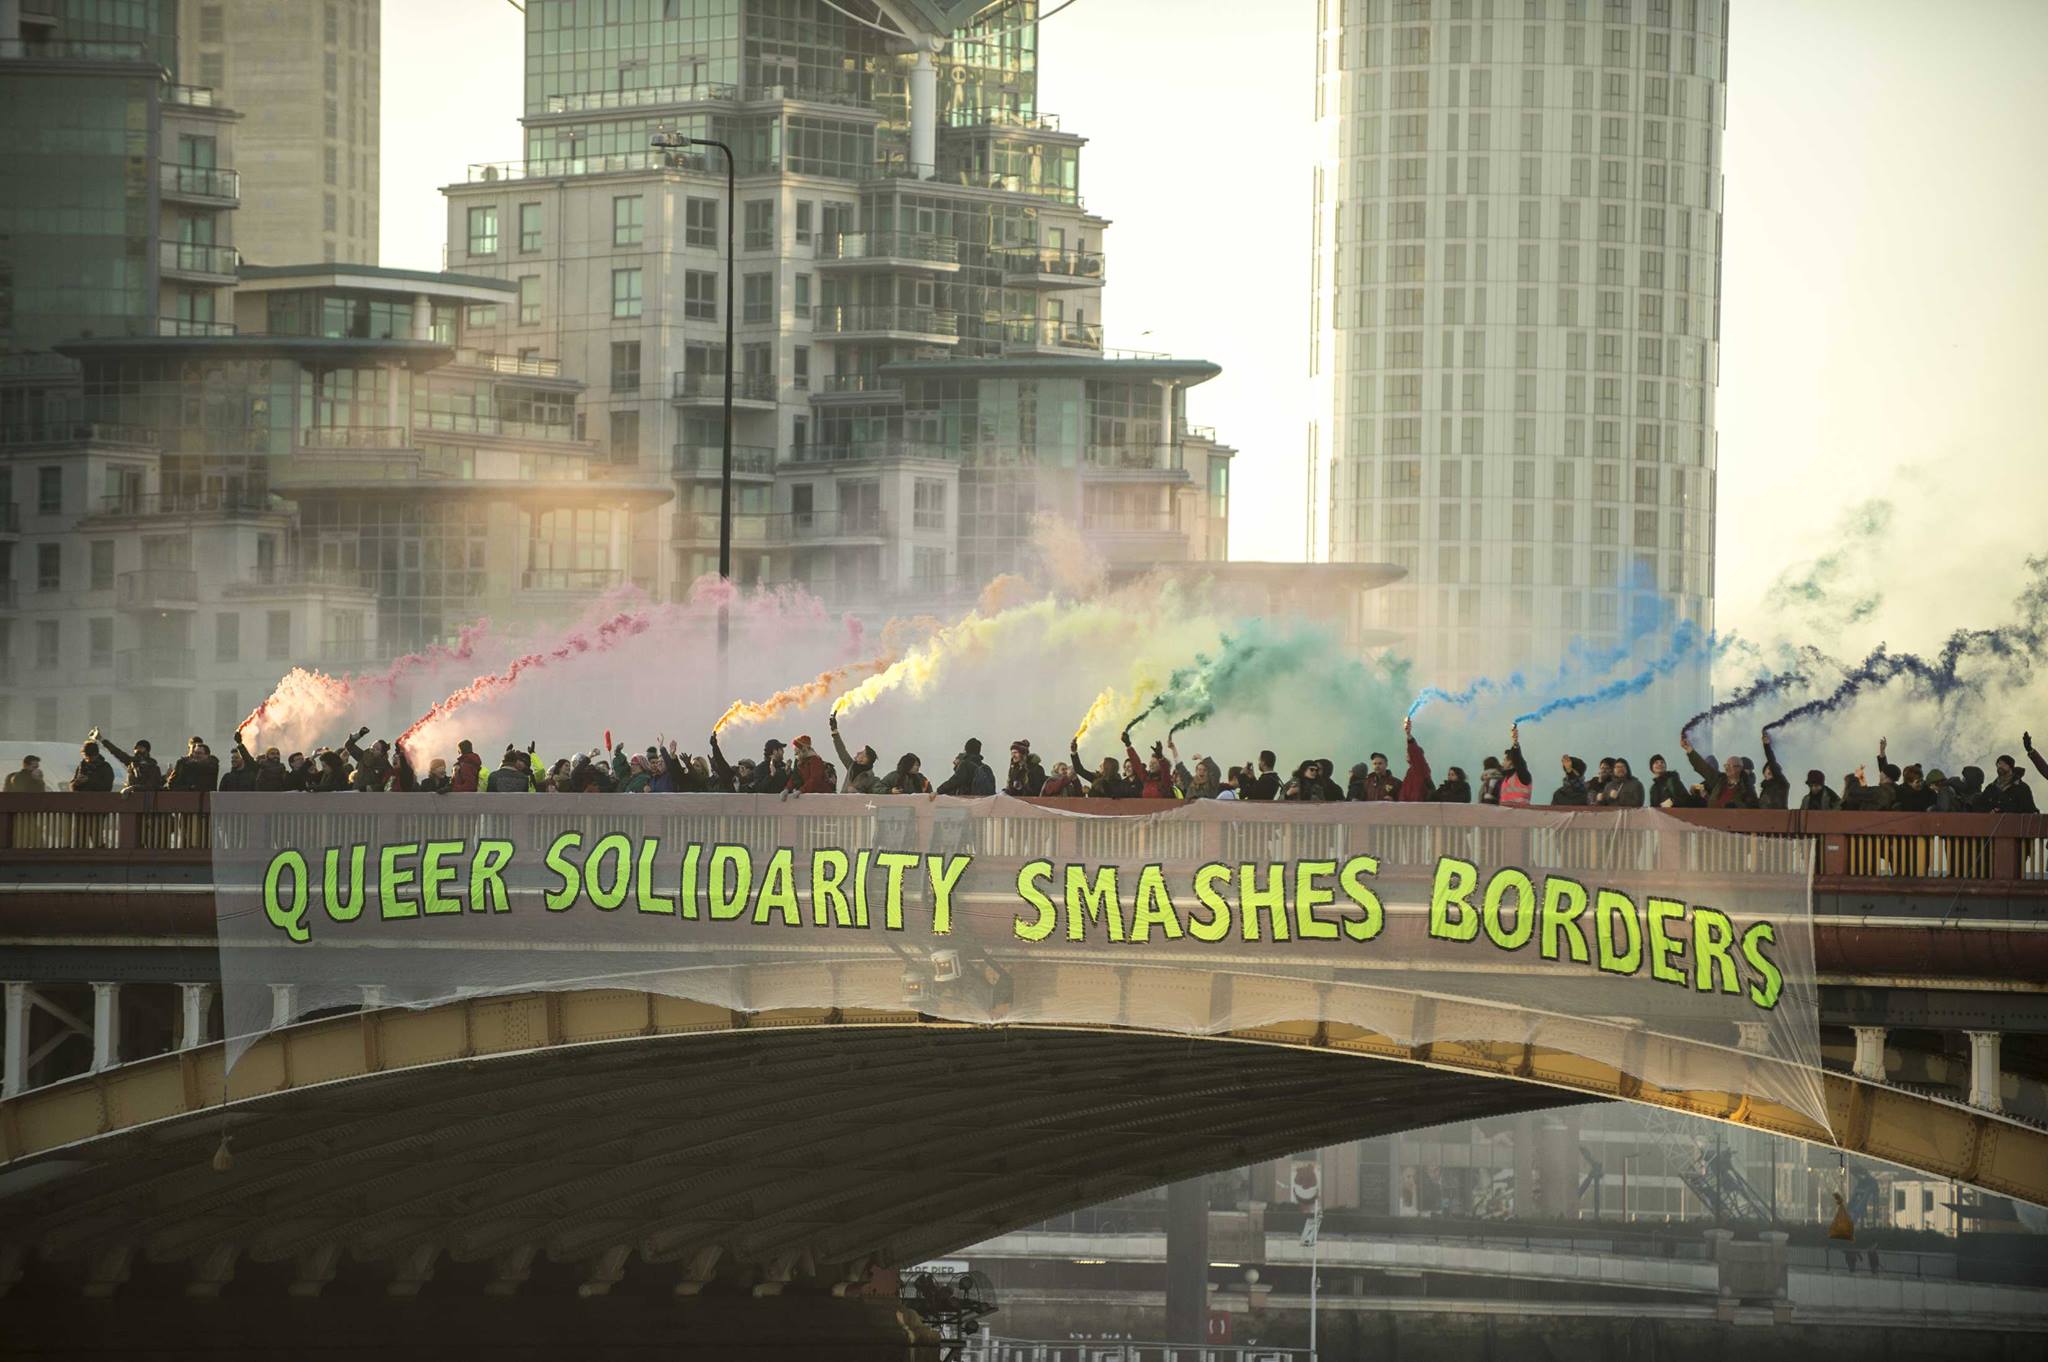 Menschenmenge auf einer Brücke mit Rauchfackeln in Regenbogenfarben, auf der Brücke hängt ein großes Transparent mit dem Text 